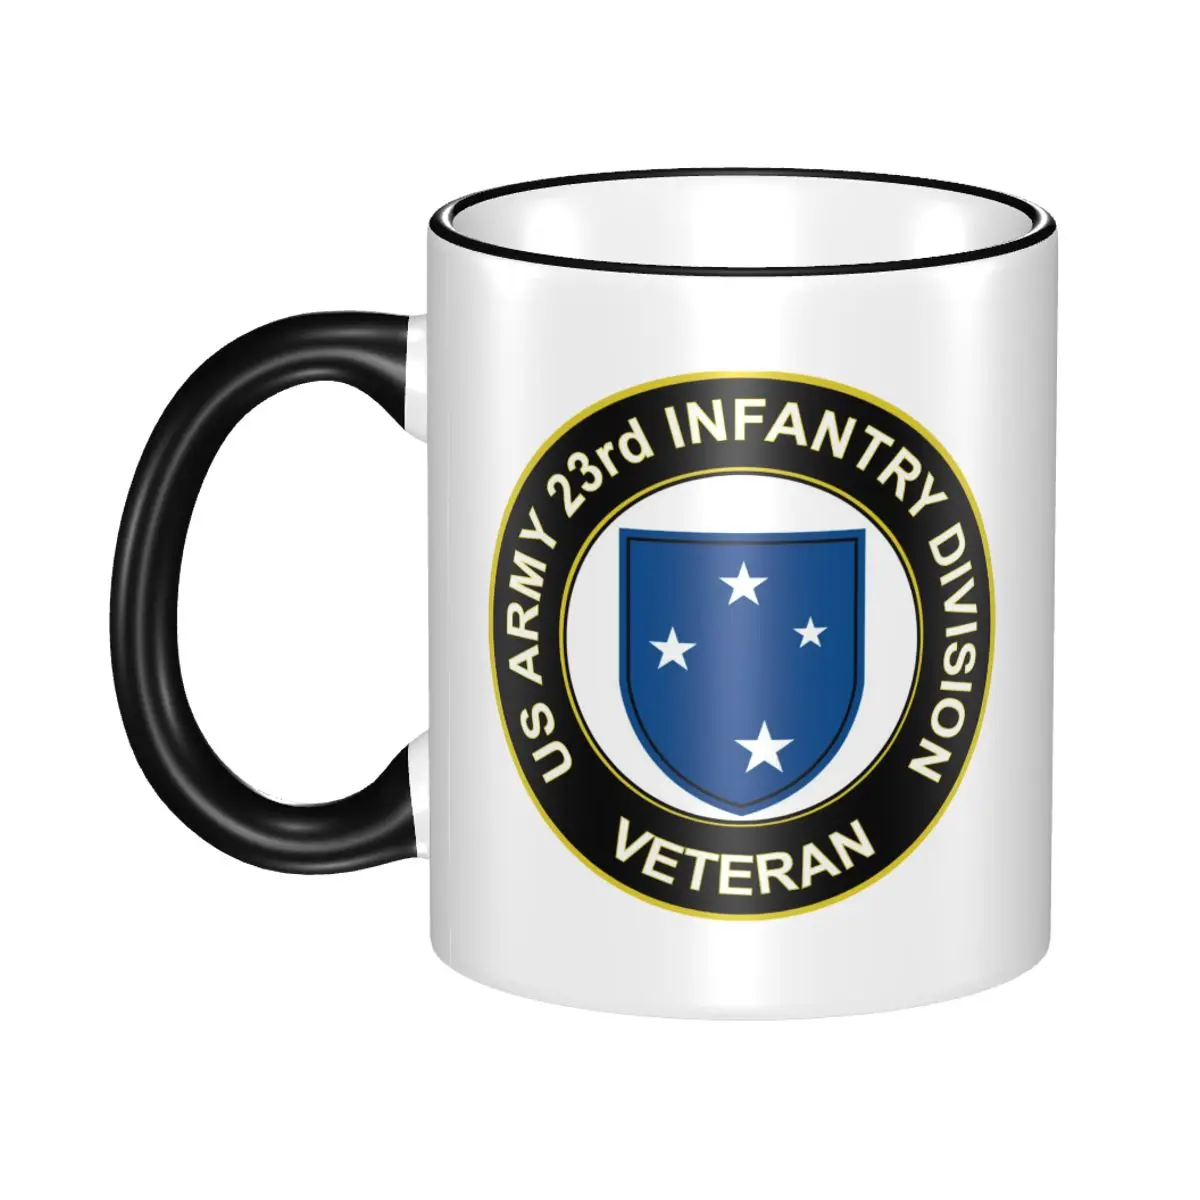 

Кофе, молочный Муген, посуда для напитков, армия США, ветеран 23-го пехотного подразделения, лучший подарок для ваших друзей